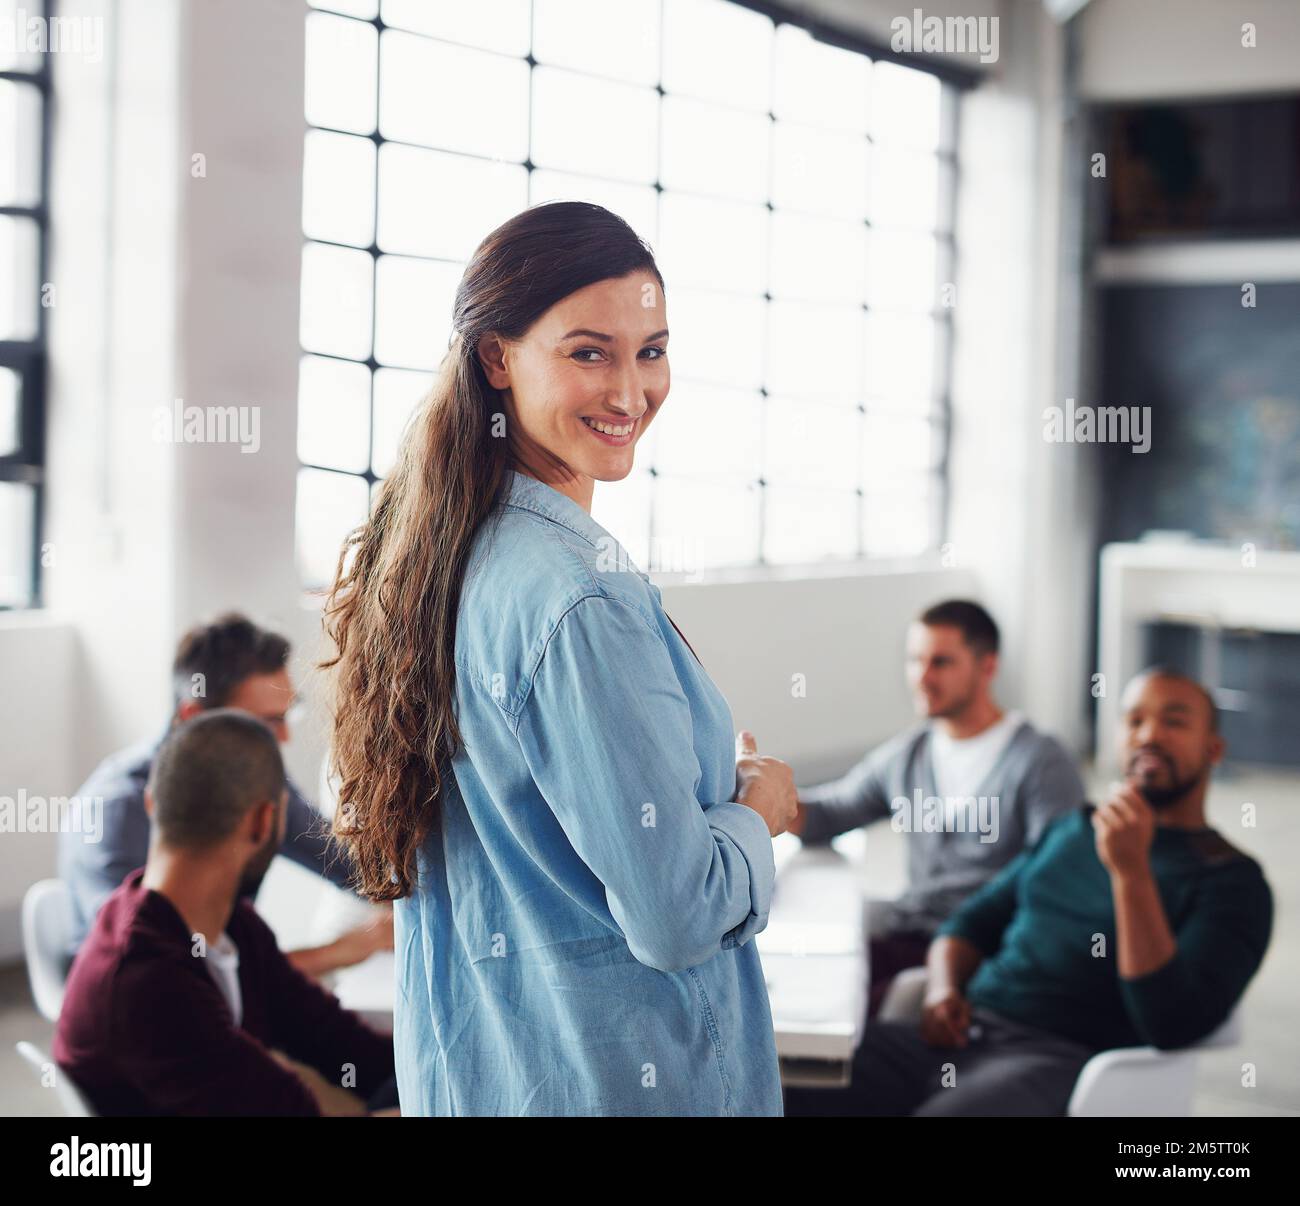 La mia squadra ha questo. Ritratto di una donna sorridente che guarda sopra la spalla mentre fa una presentazione ai colleghi in un ufficio. Foto Stock